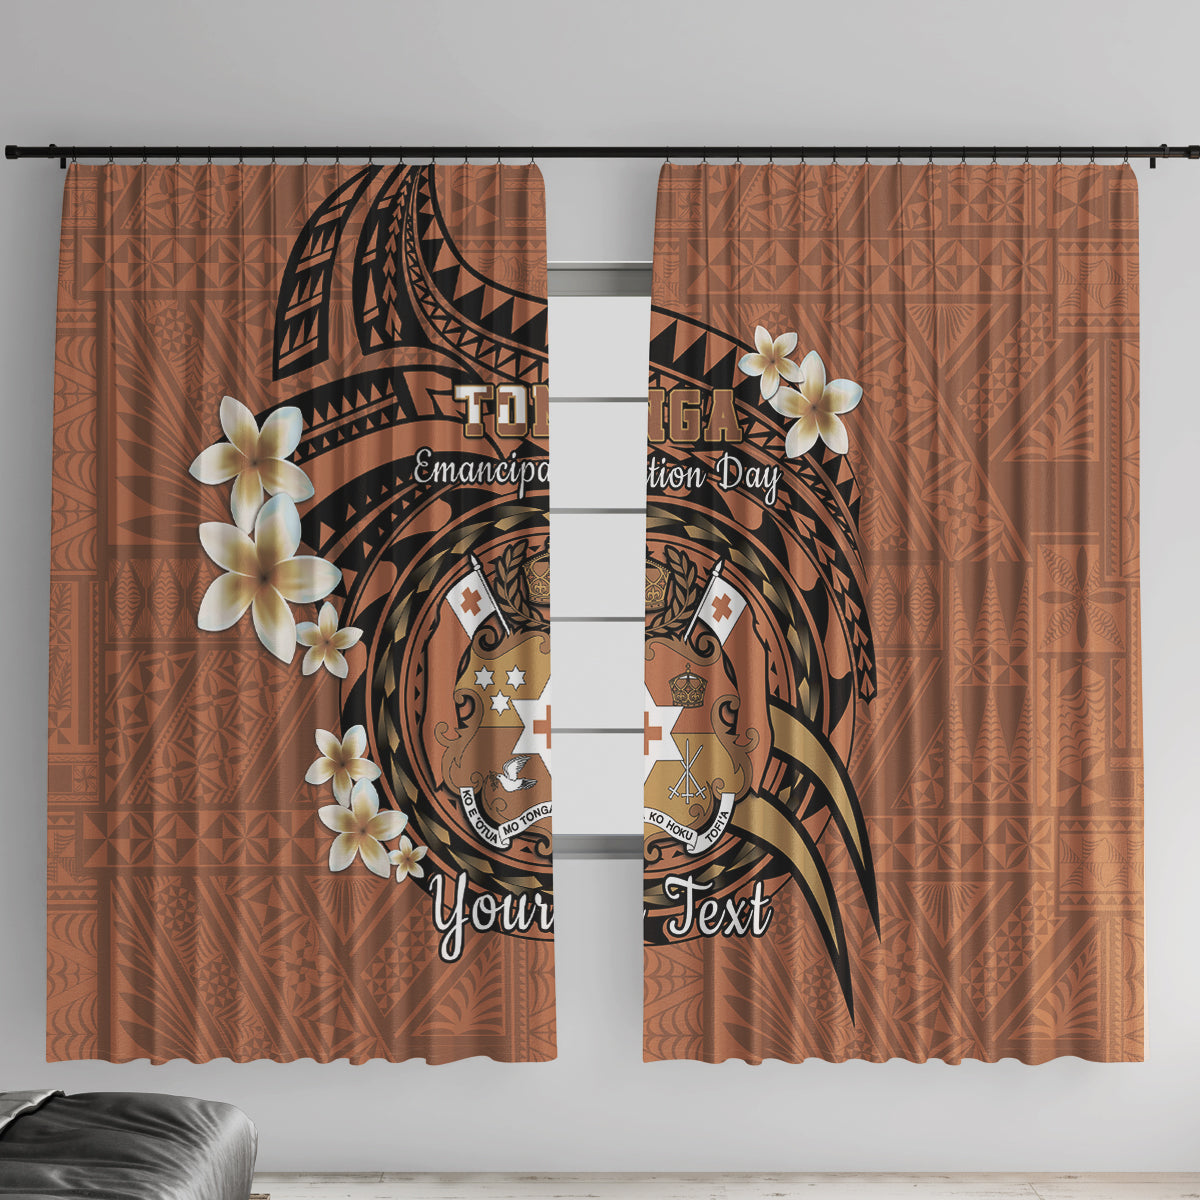 Personalised Tonga Emancipation Day Window Curtain Tongan Ngatu Pattern - Brown Version